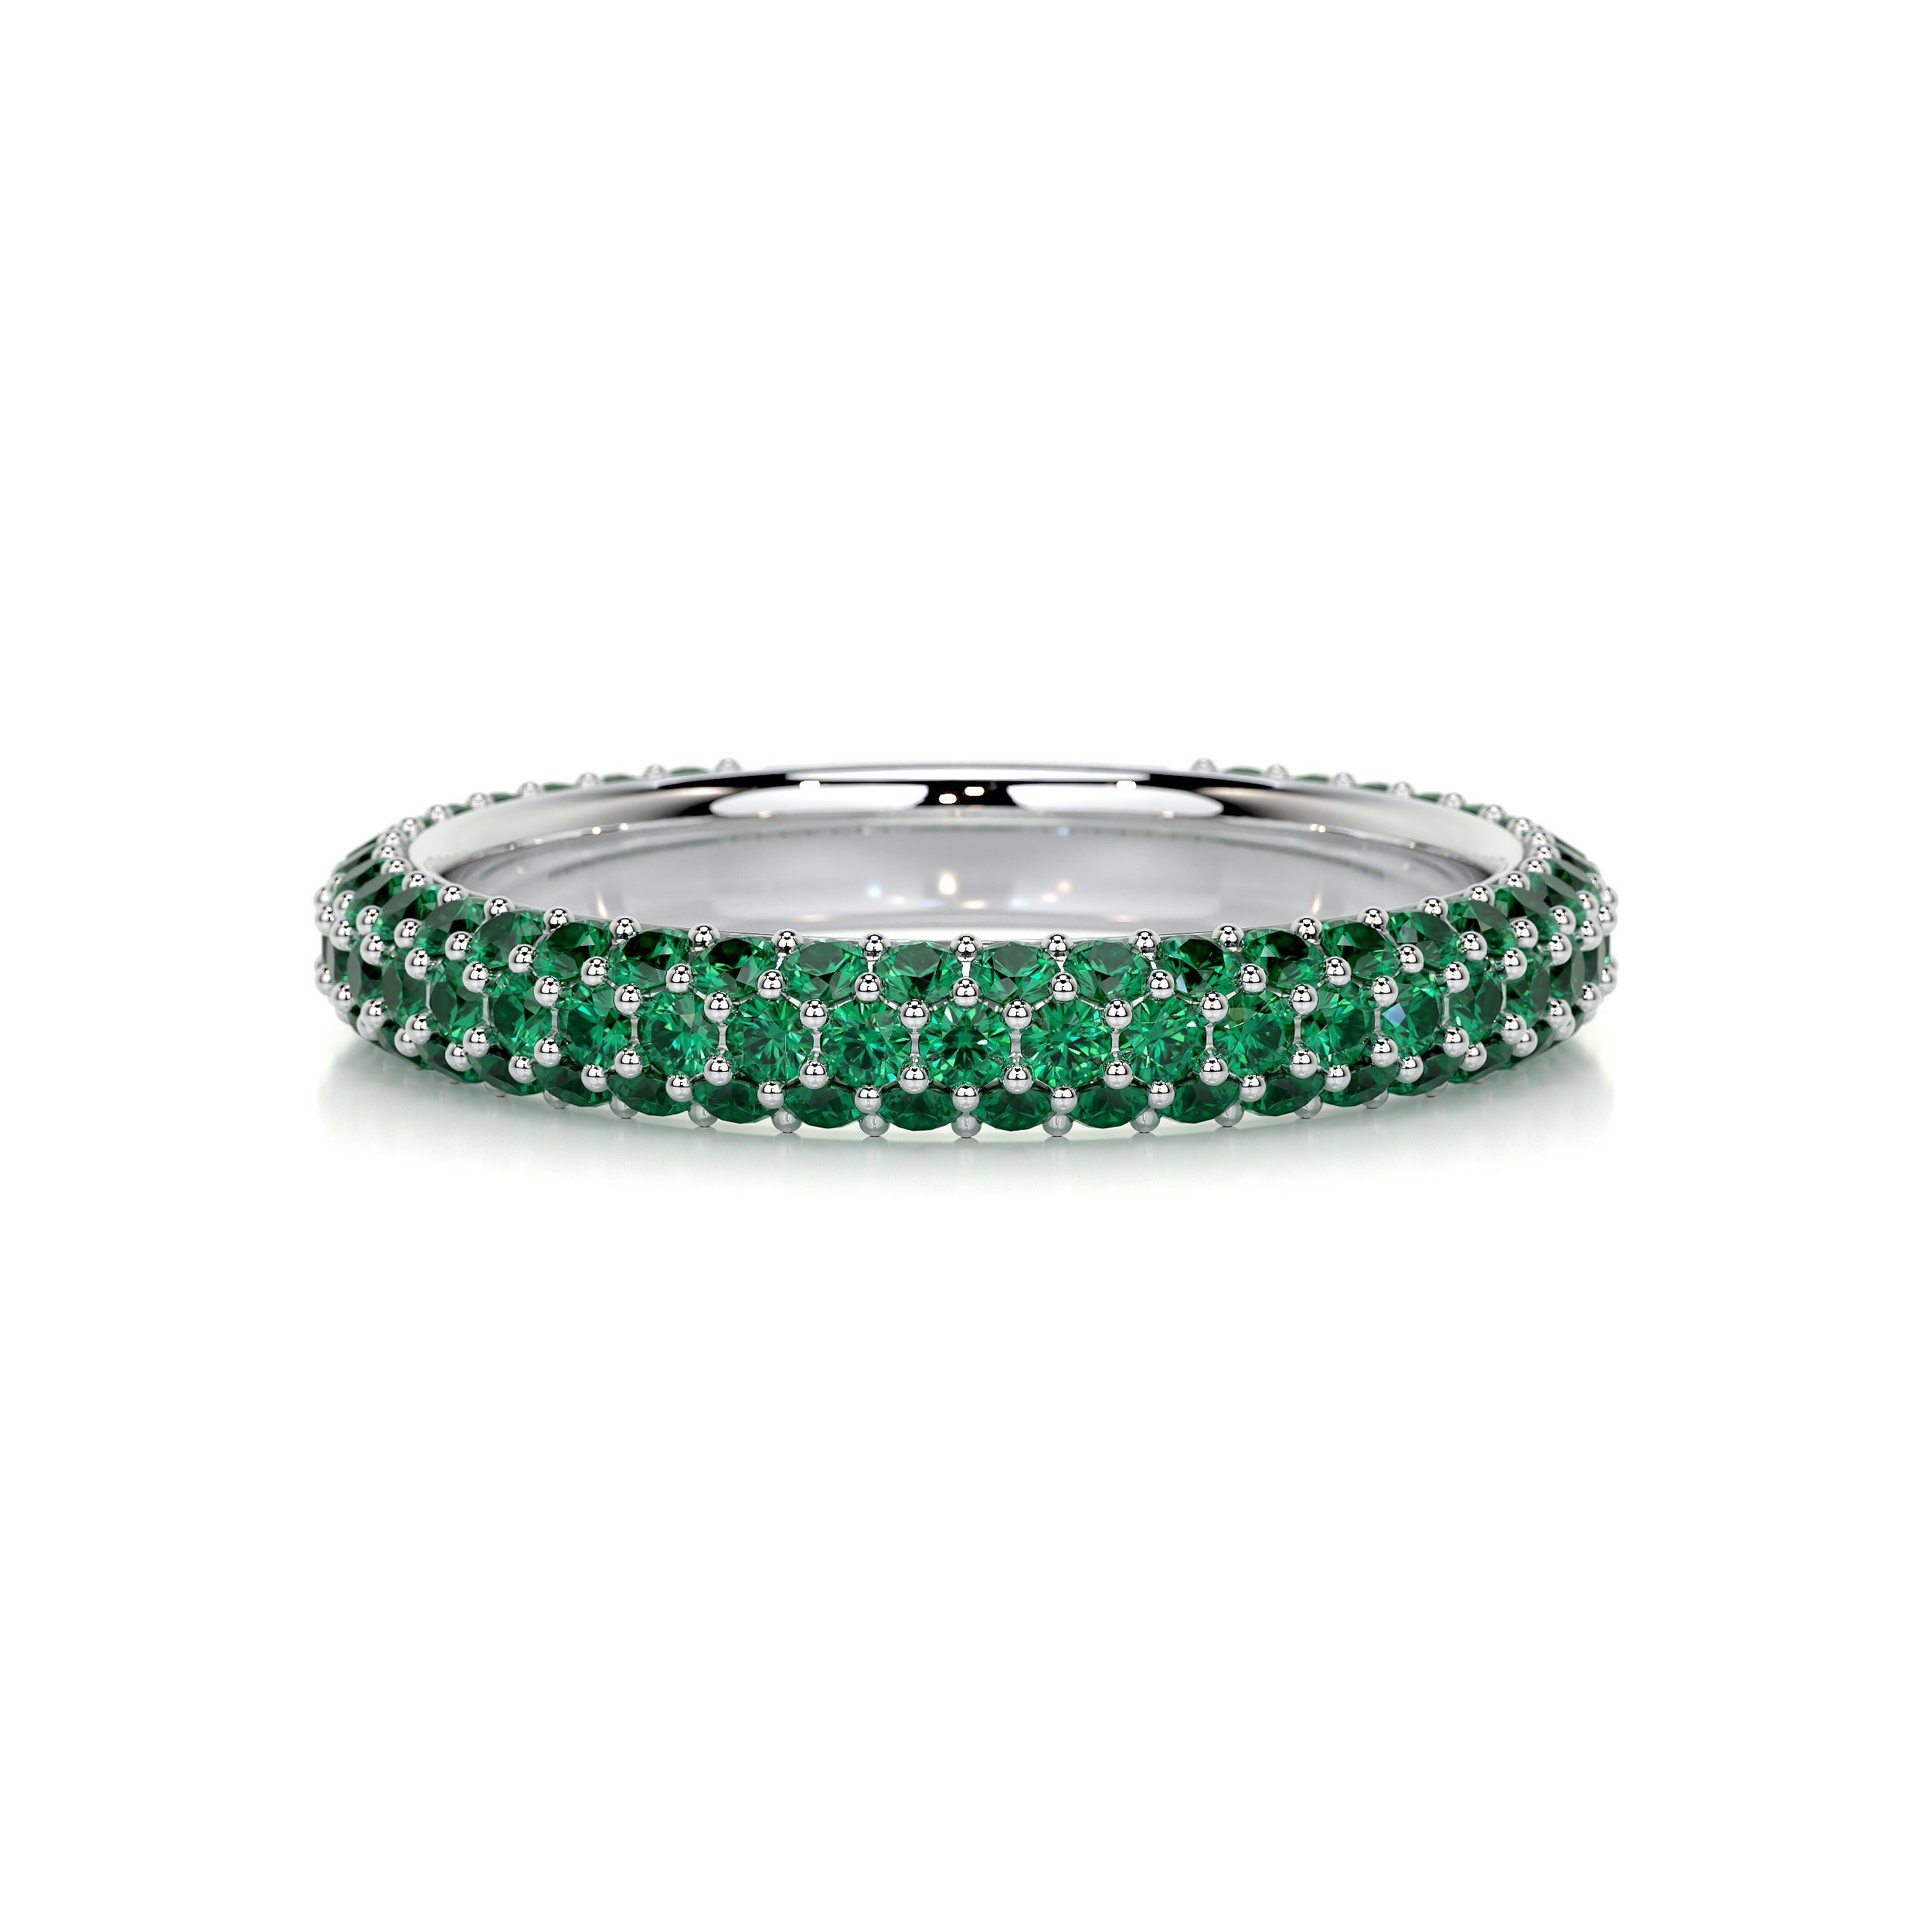 Emma Green Gemstone Wedding Ring   (1.25 Carat) - 14K White Gold